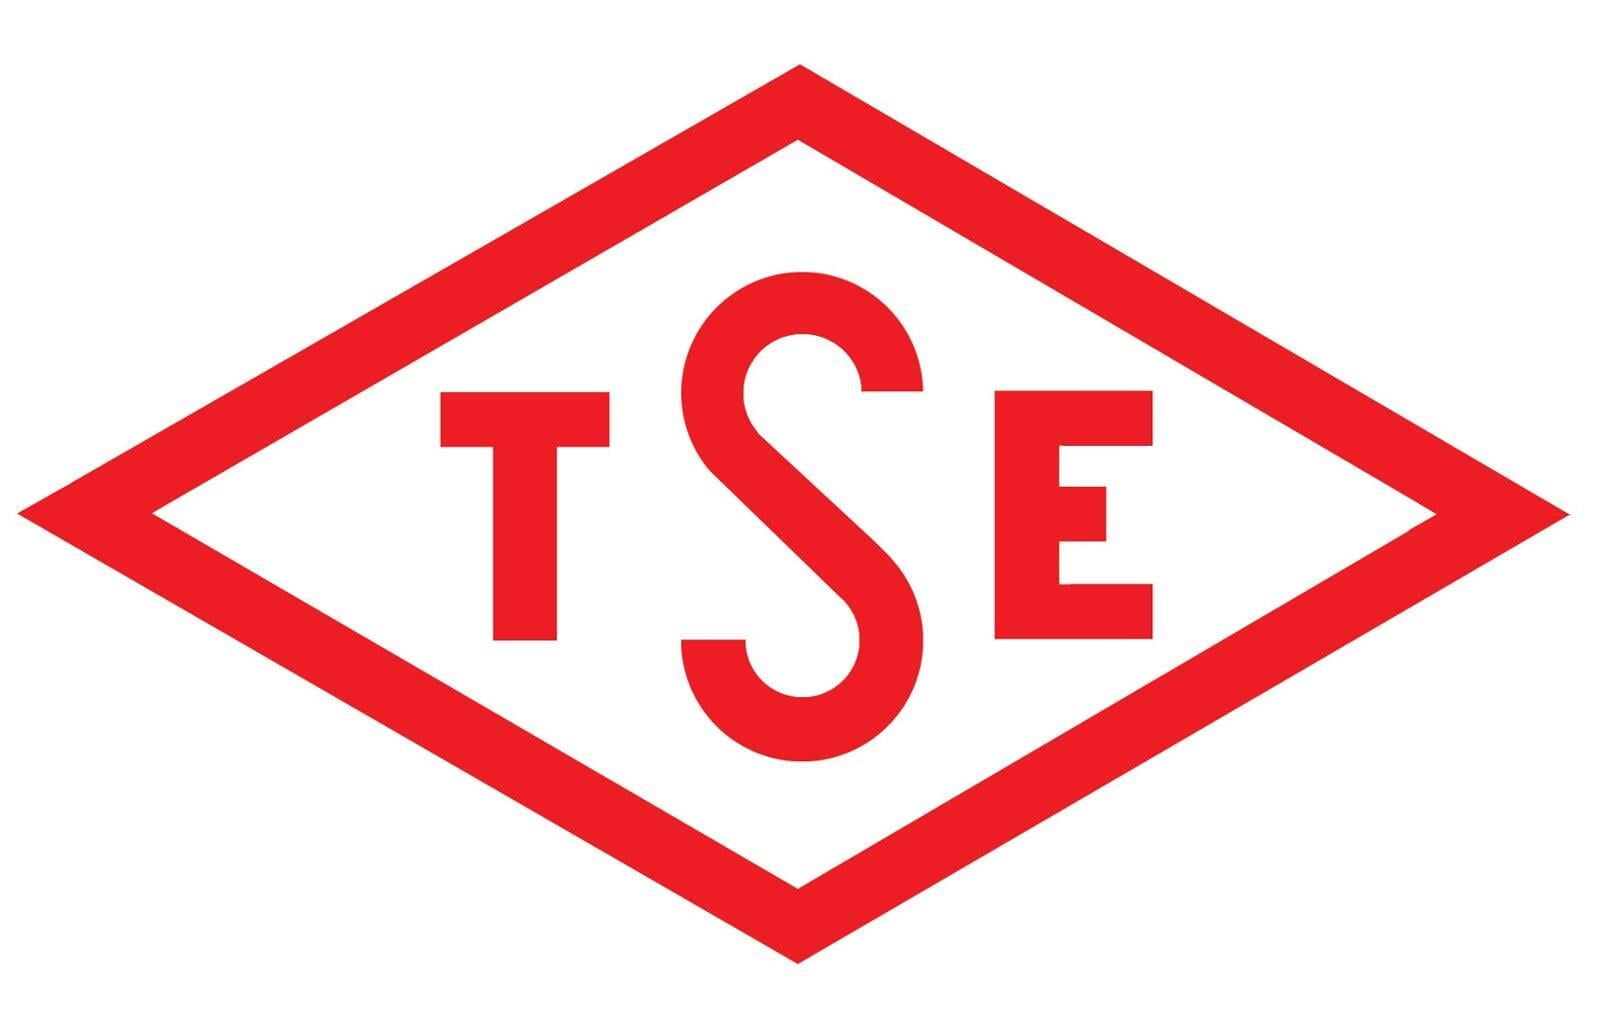 TSE scheme logo